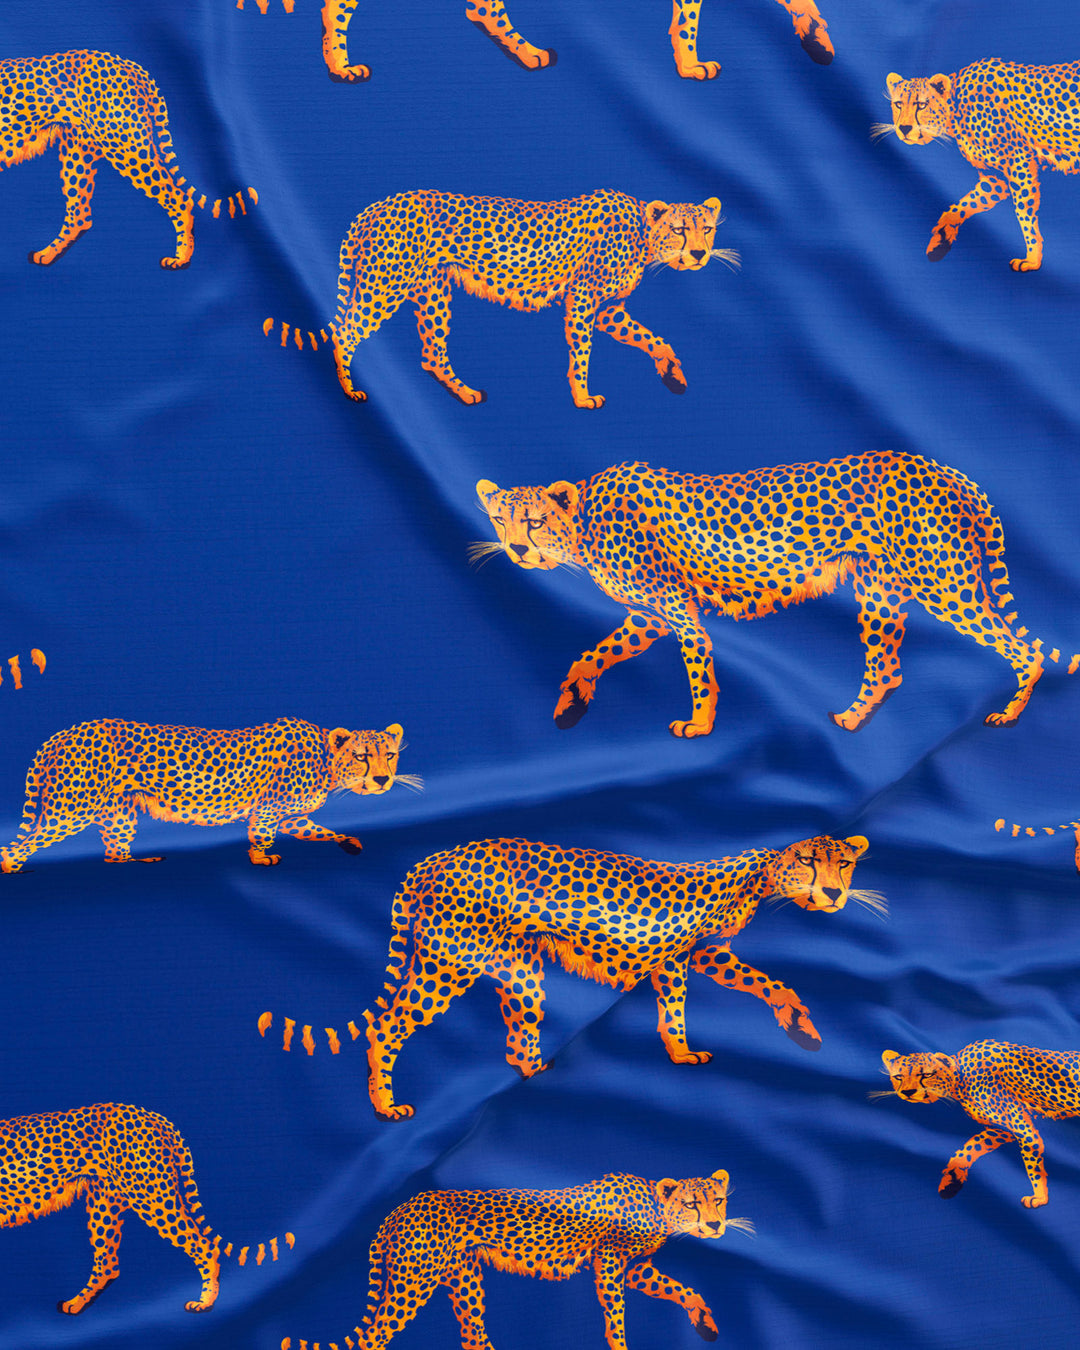 Mens Long Pyjamas Blue Cheetahs